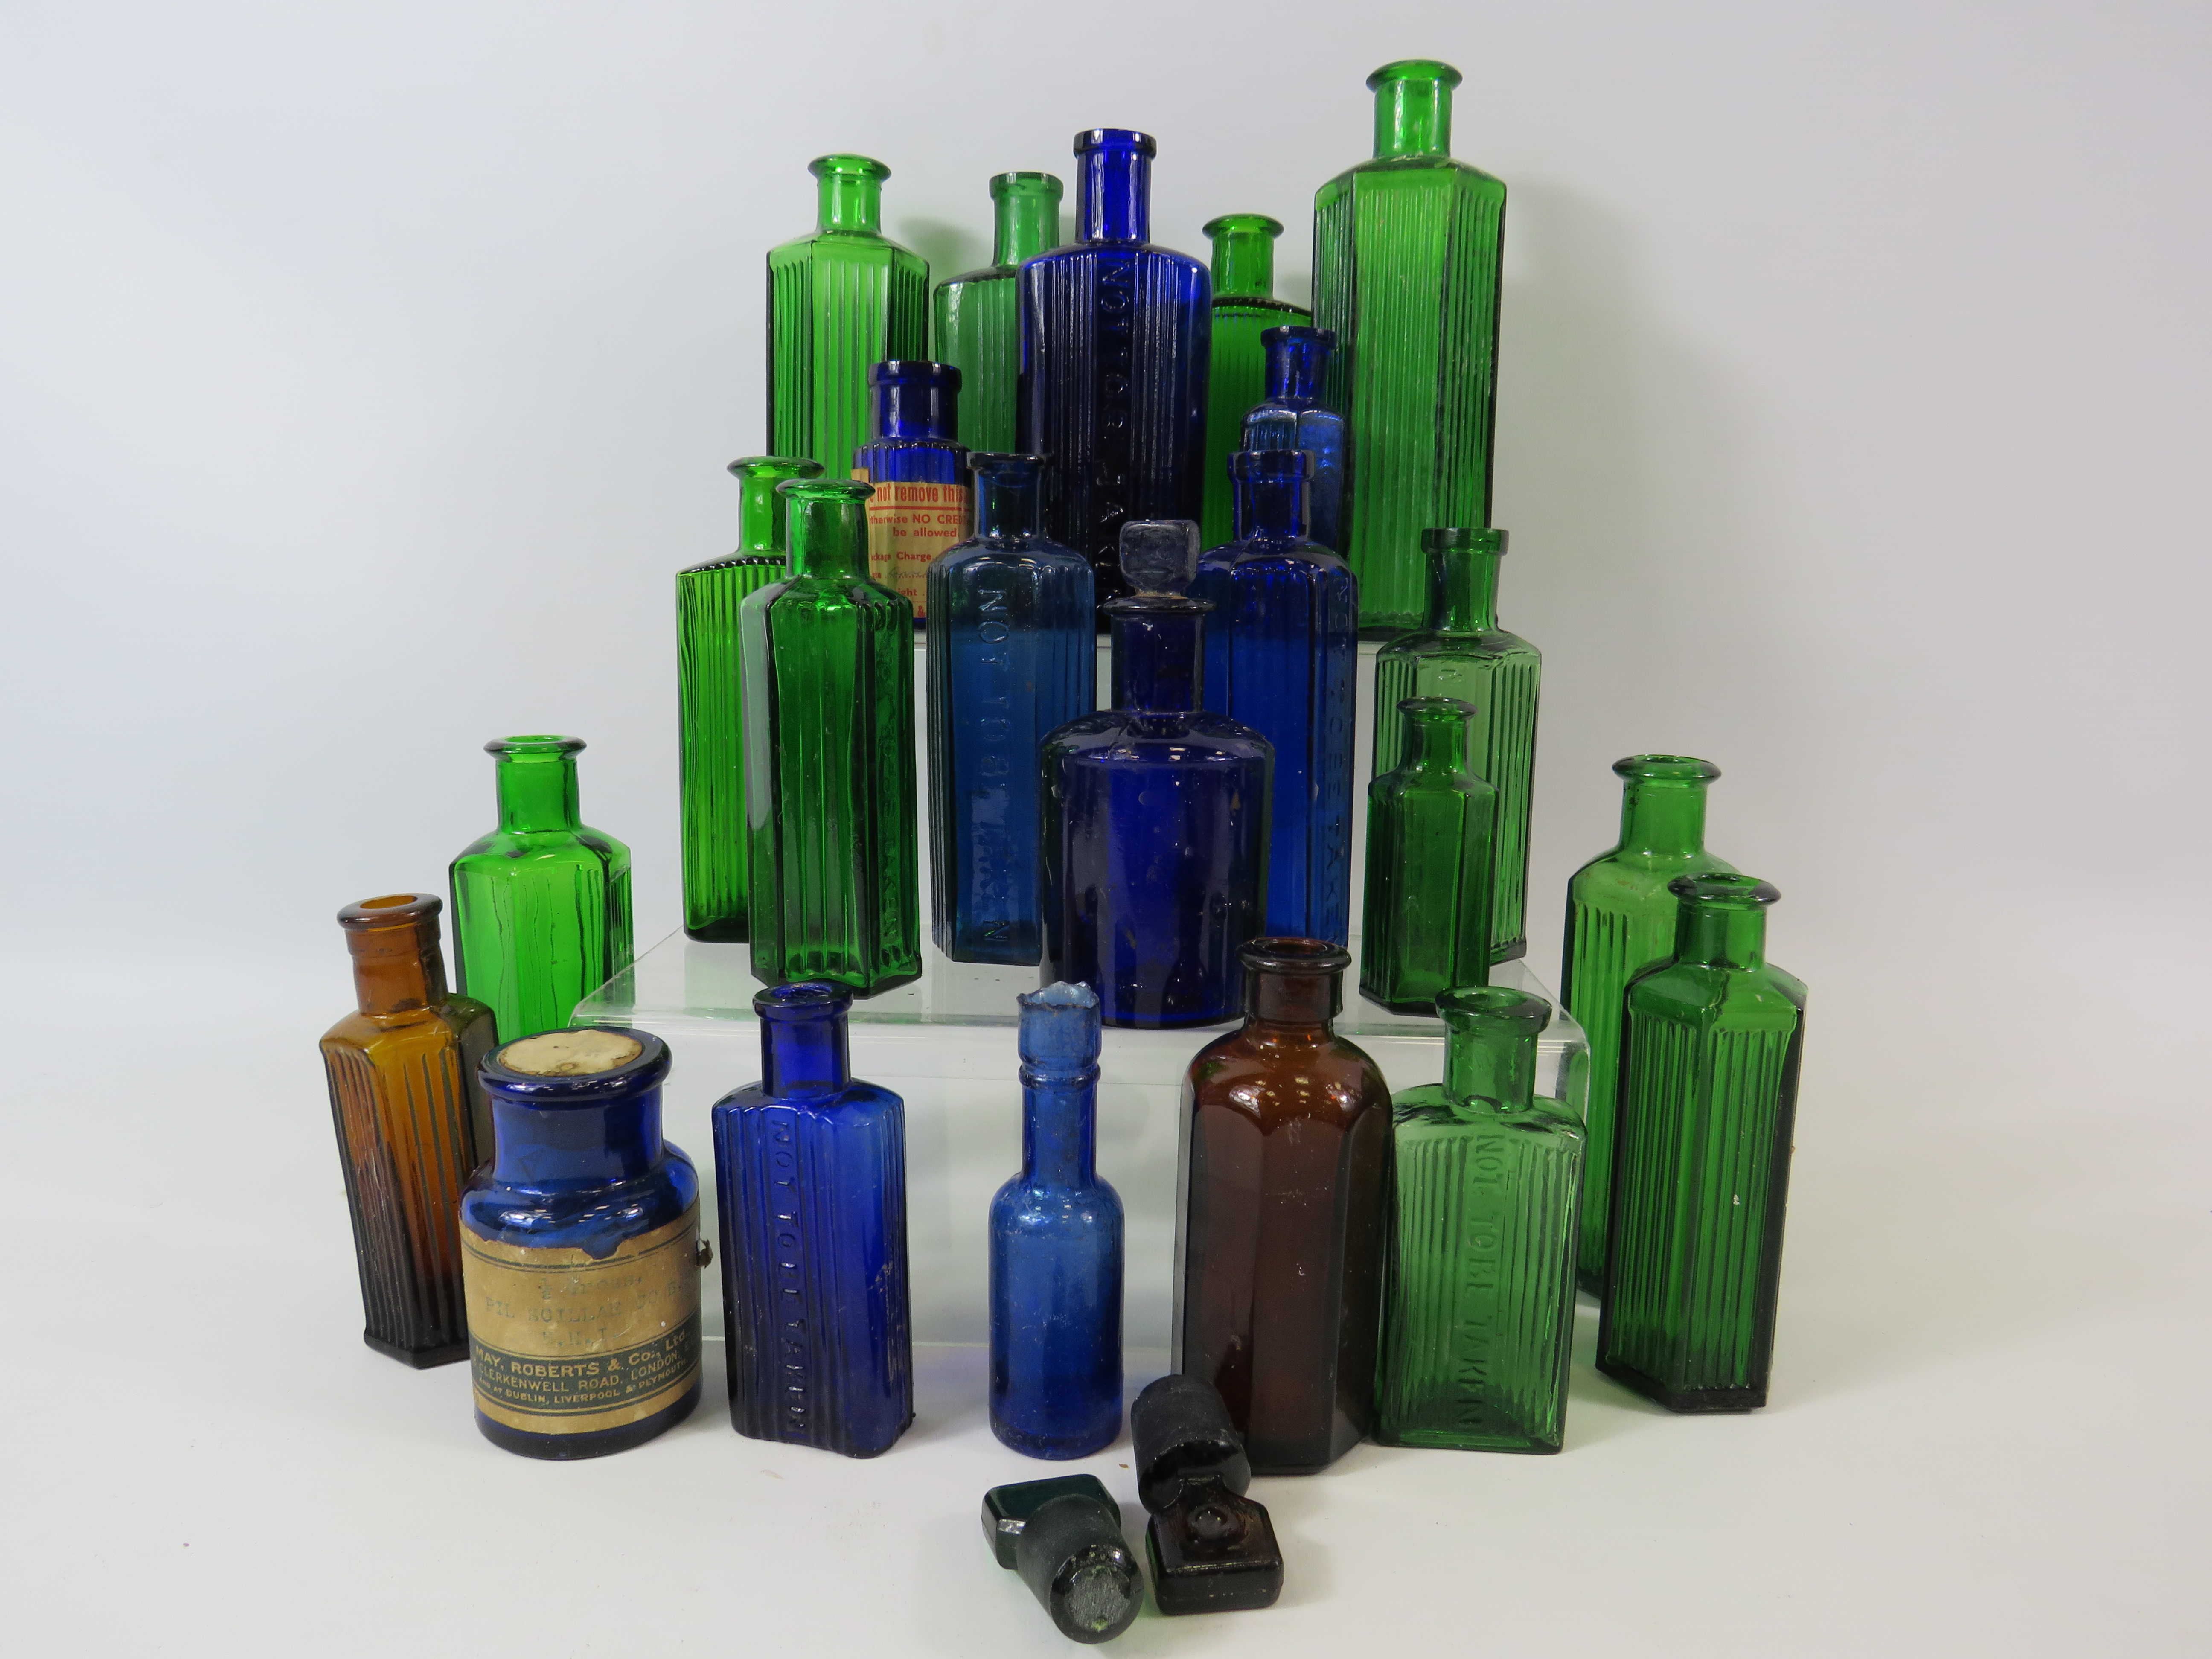 23 Vintage coloured medicine bottles, blue, green and brown.